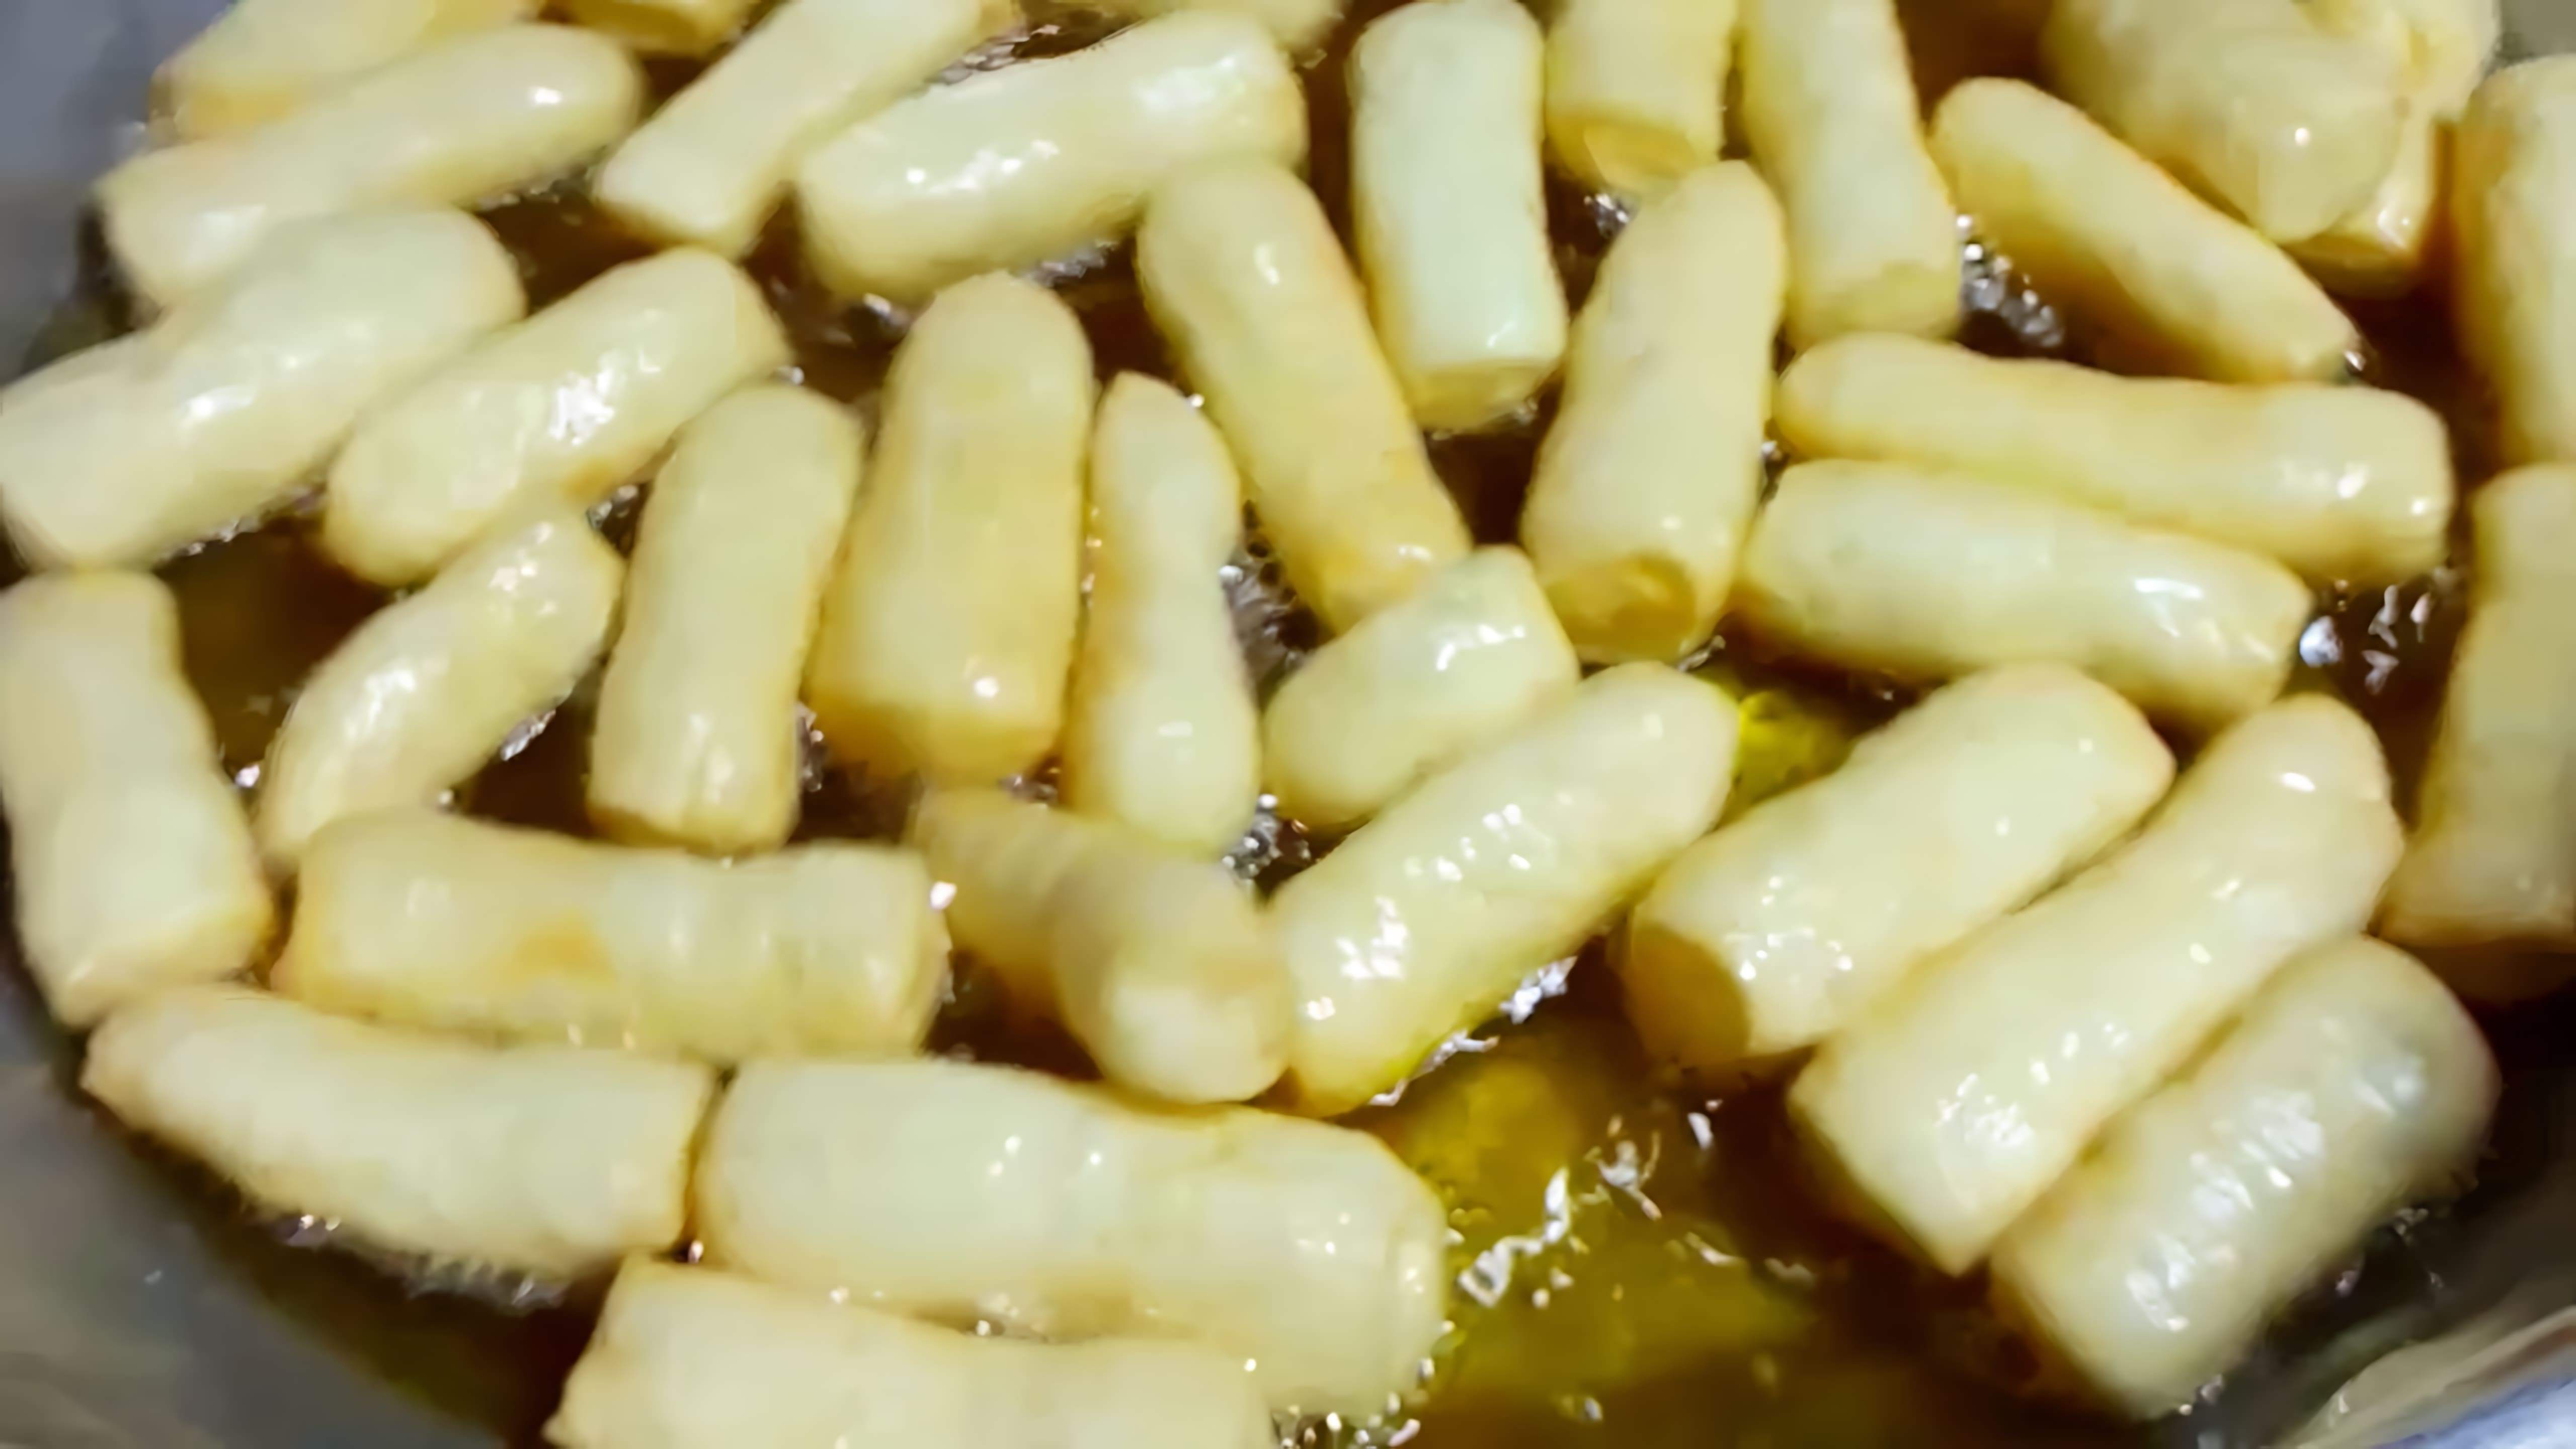 Рецепт татарского бавырсака - это видео-ролик, который демонстрирует процесс приготовления традиционного татарского десерта